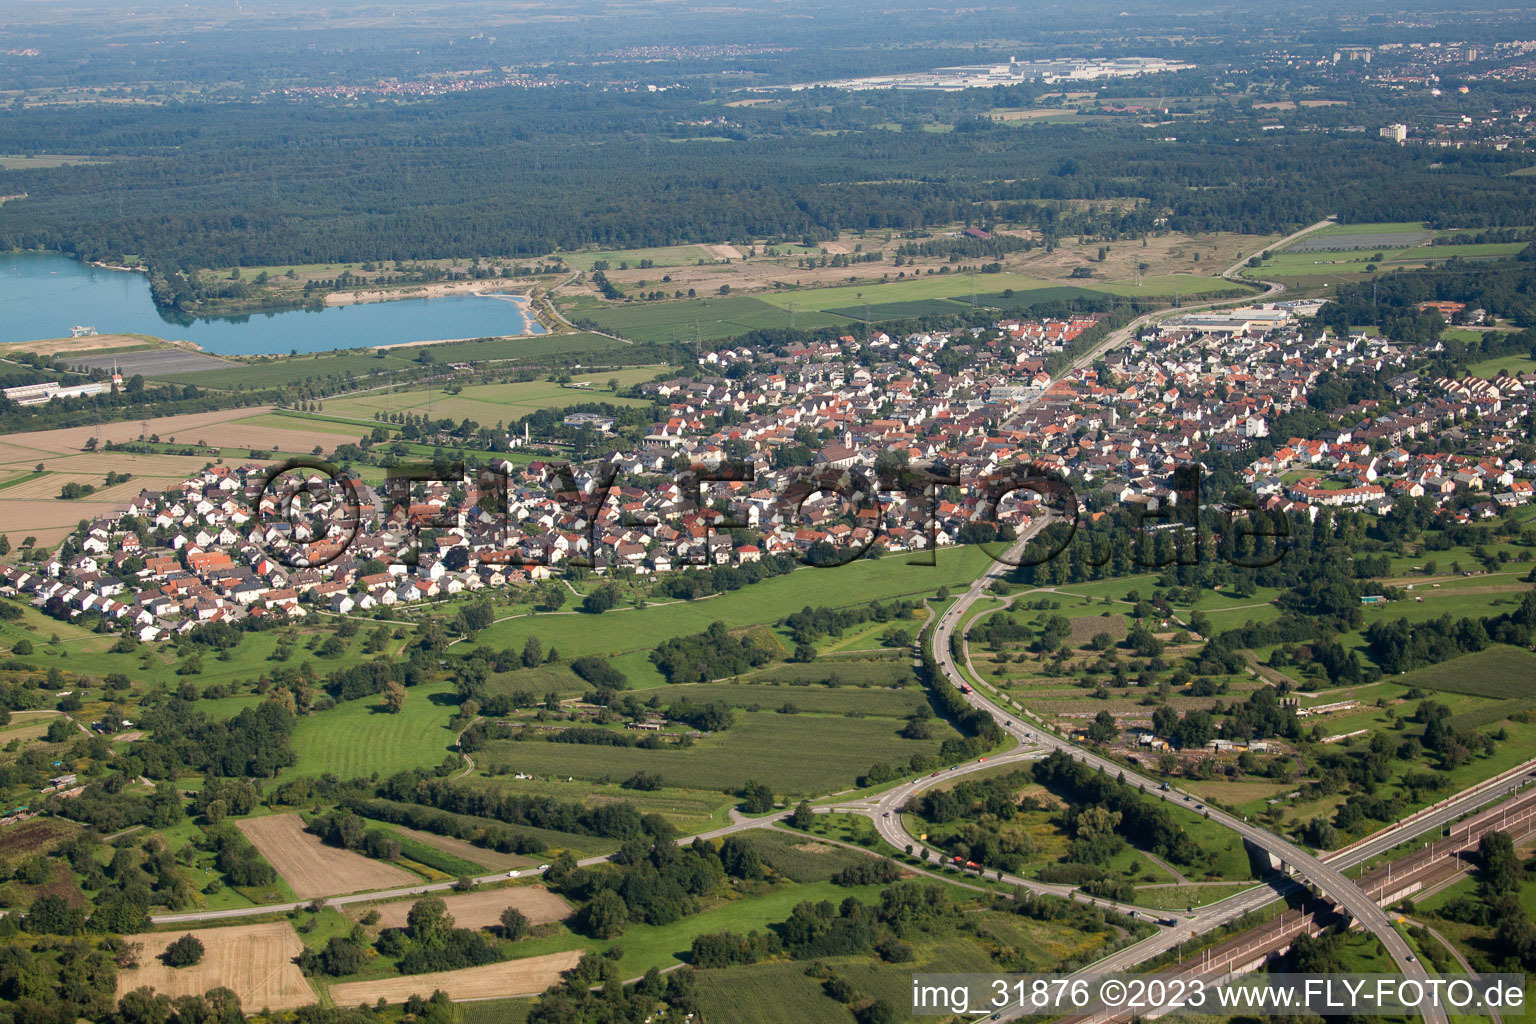 Luftbild von Ortsteil Sandweier in Baden-Baden im Bundesland Baden-Württemberg, Deutschland